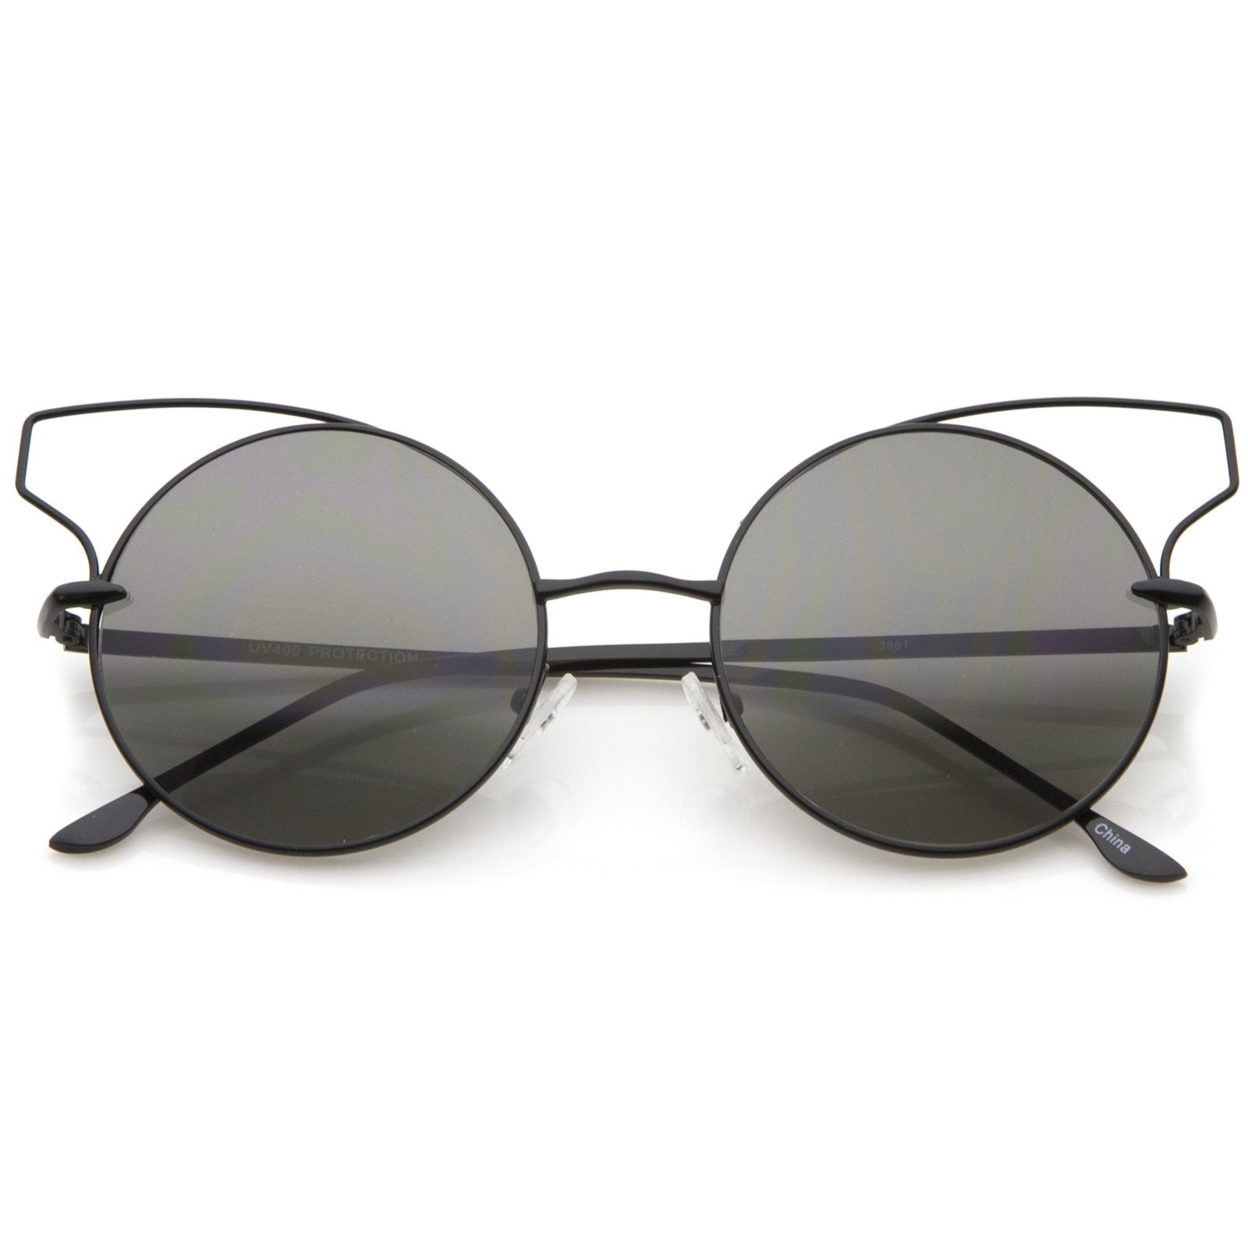 Women's Full Metal Open Design Frame Round Cat Eye Sunglasses 55mm - White / Smoke